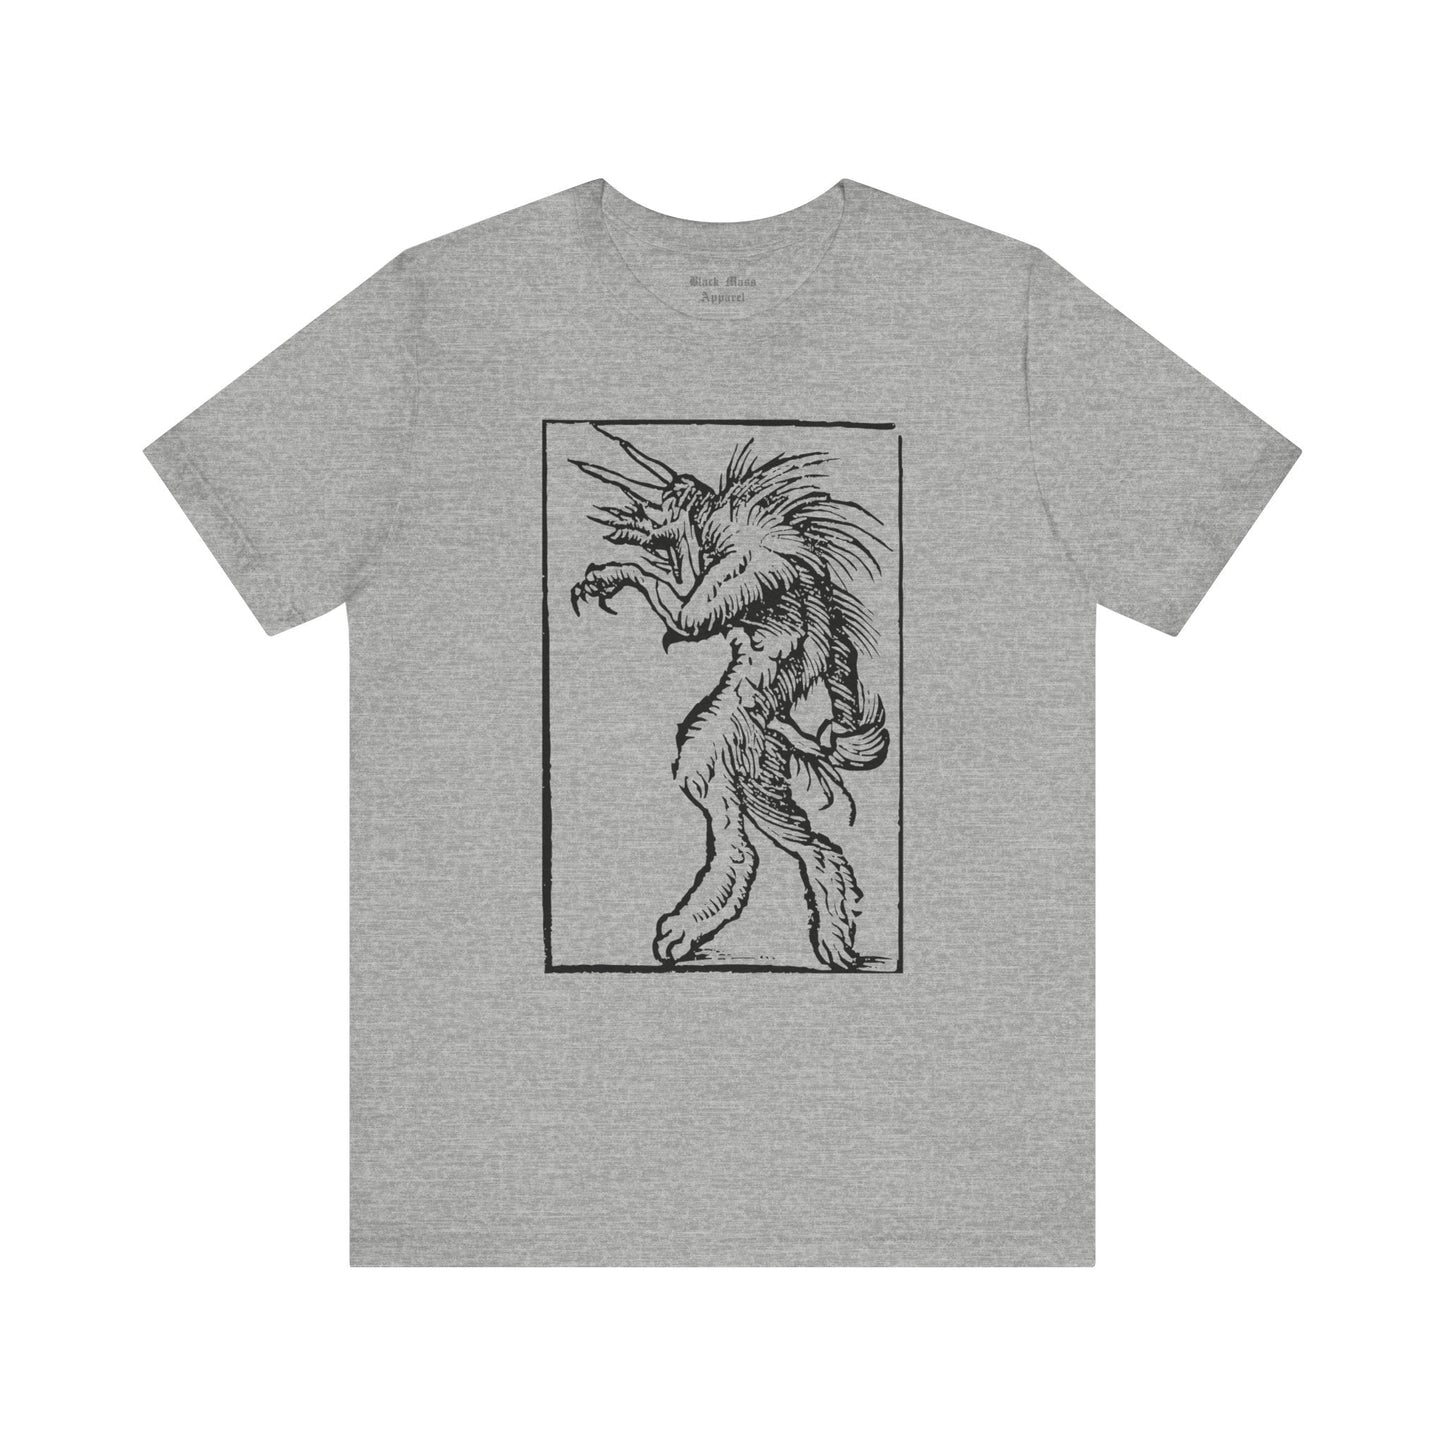 Werewolf II - Black Mass Apparel - T-Shirt